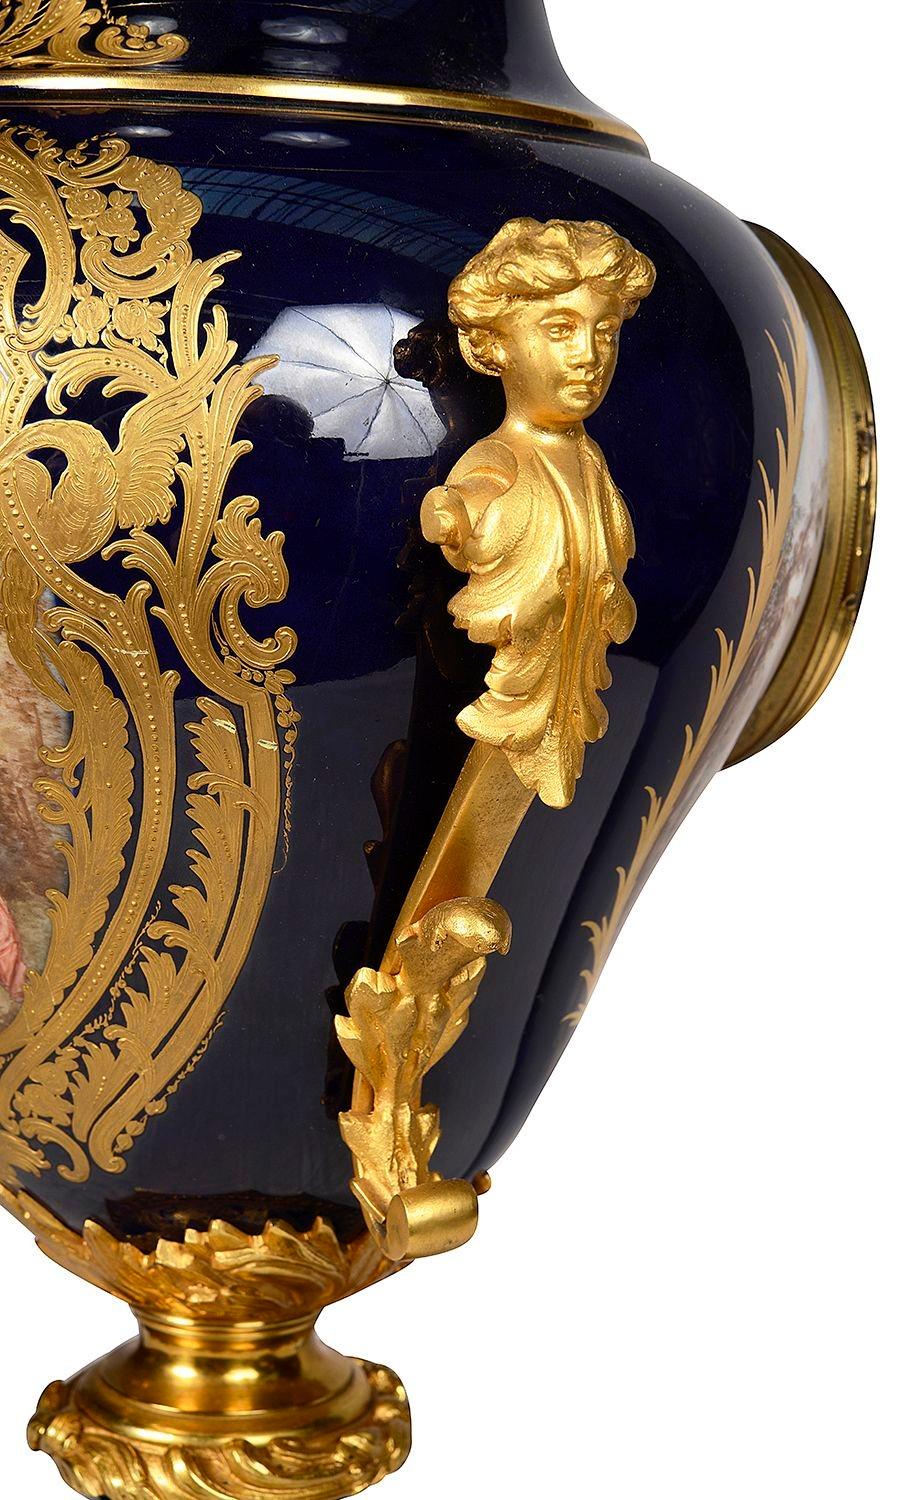 Porcelain French Sevres style porcelain vase / mantel clock. For Sale